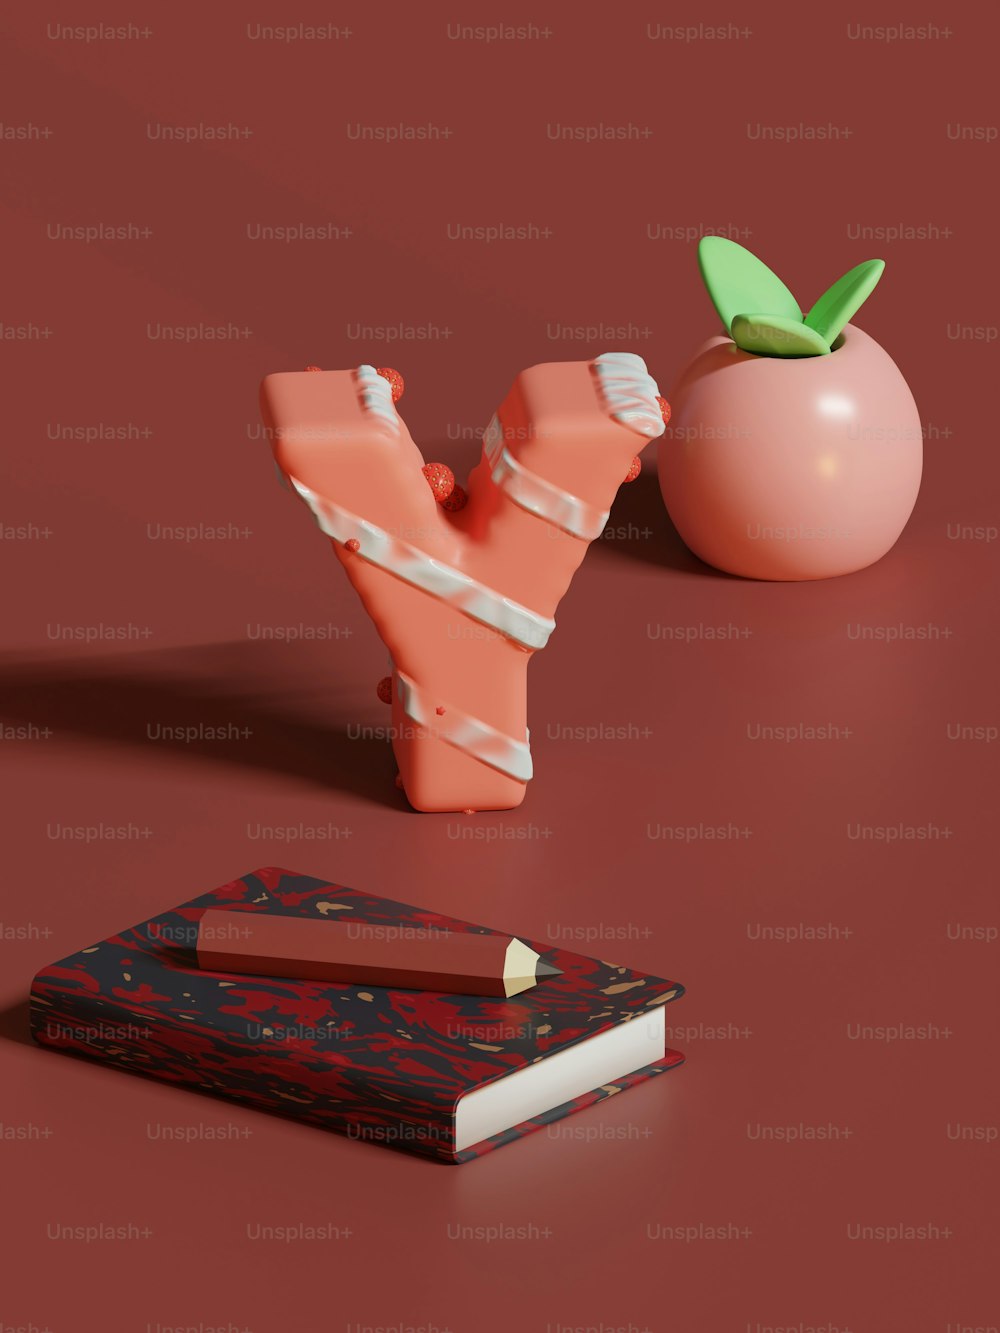 Un pedazo de papel junto a una manzana y un libro